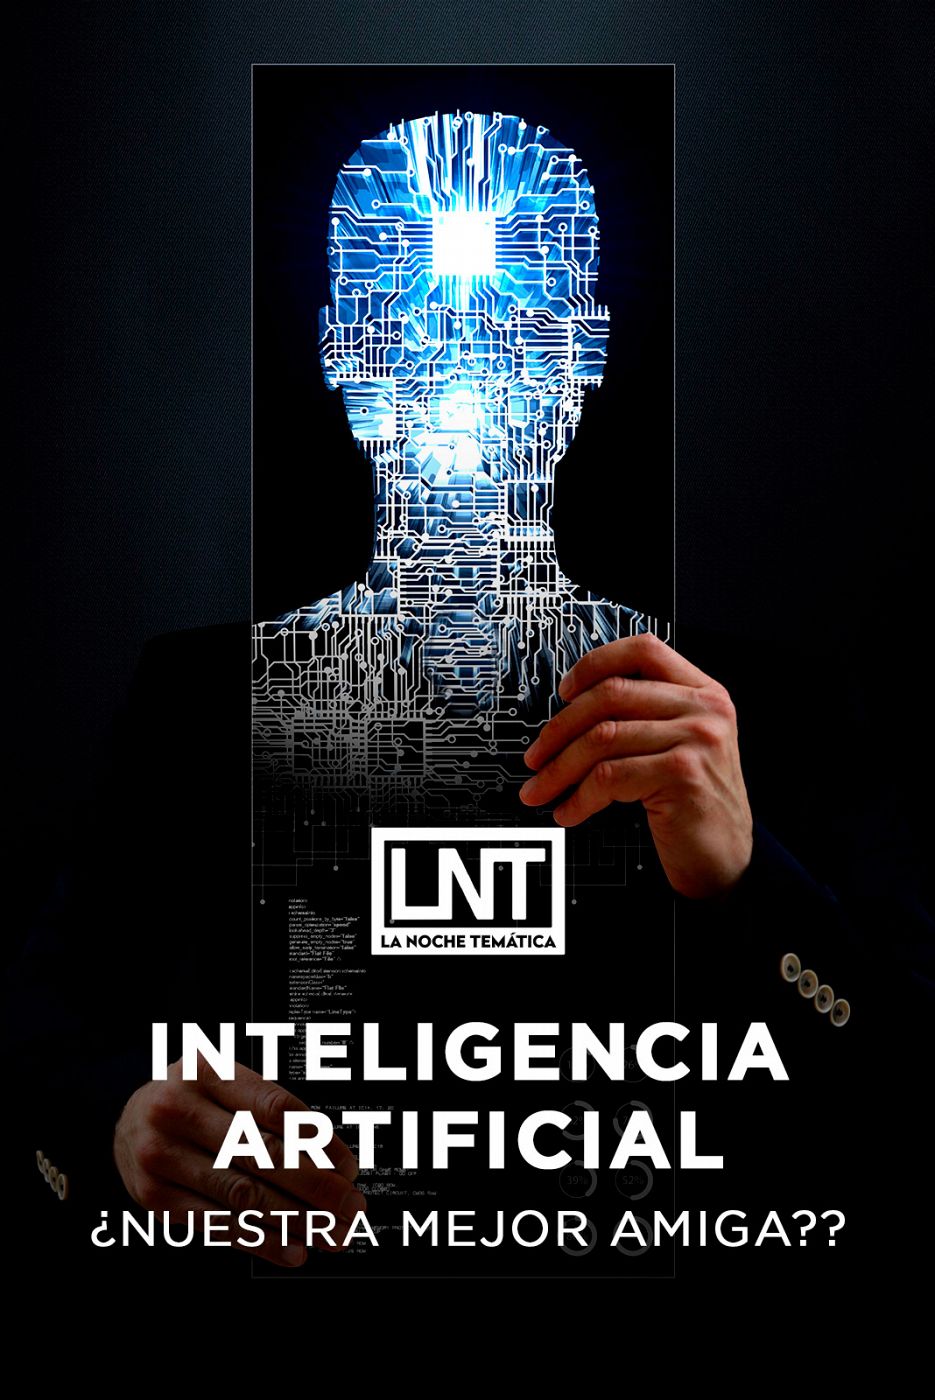 La noche temática - Inteligencia Artificial, ¿nuestra mejor amiga?